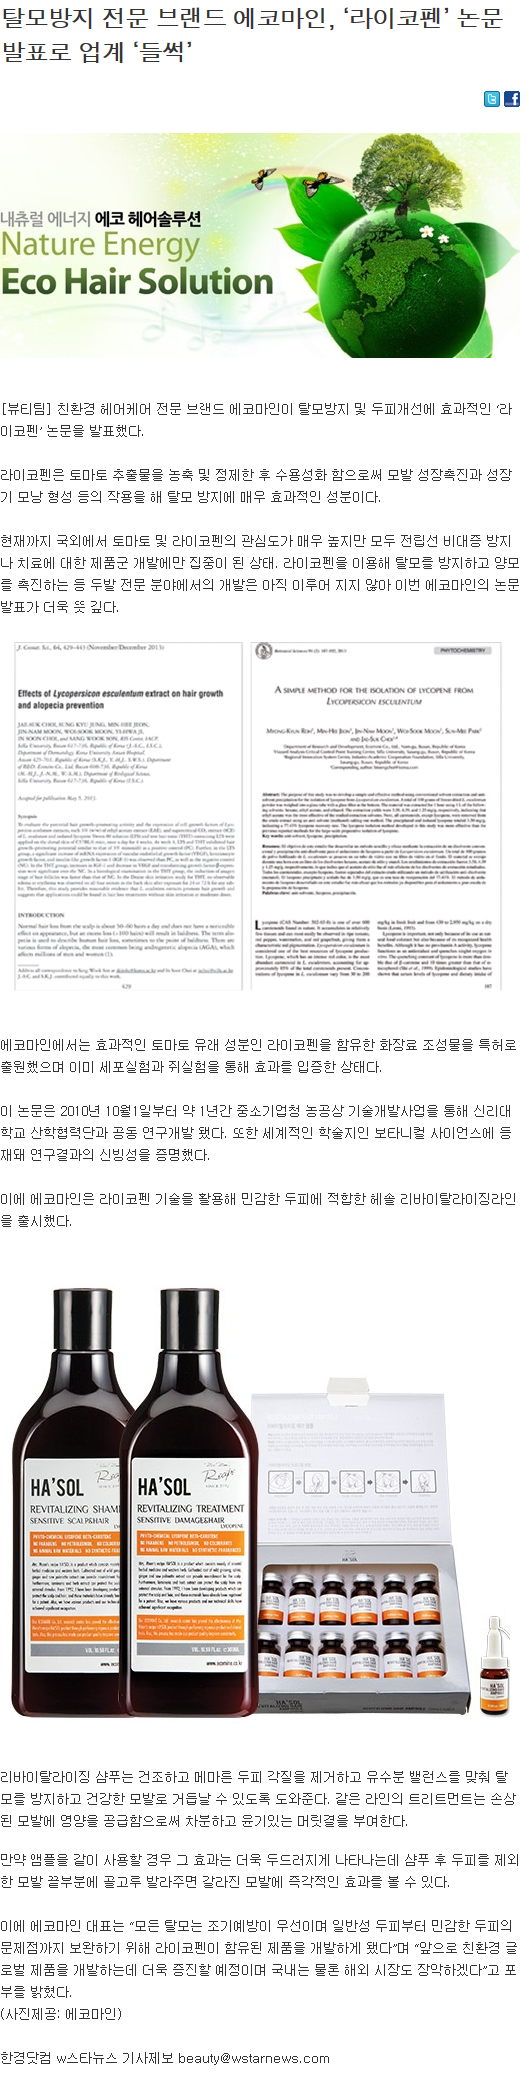 [한경닷컴-2014.02.21] 에코마인, ‘라이코펜’ 논문 발표로 업계 ‘들썩’